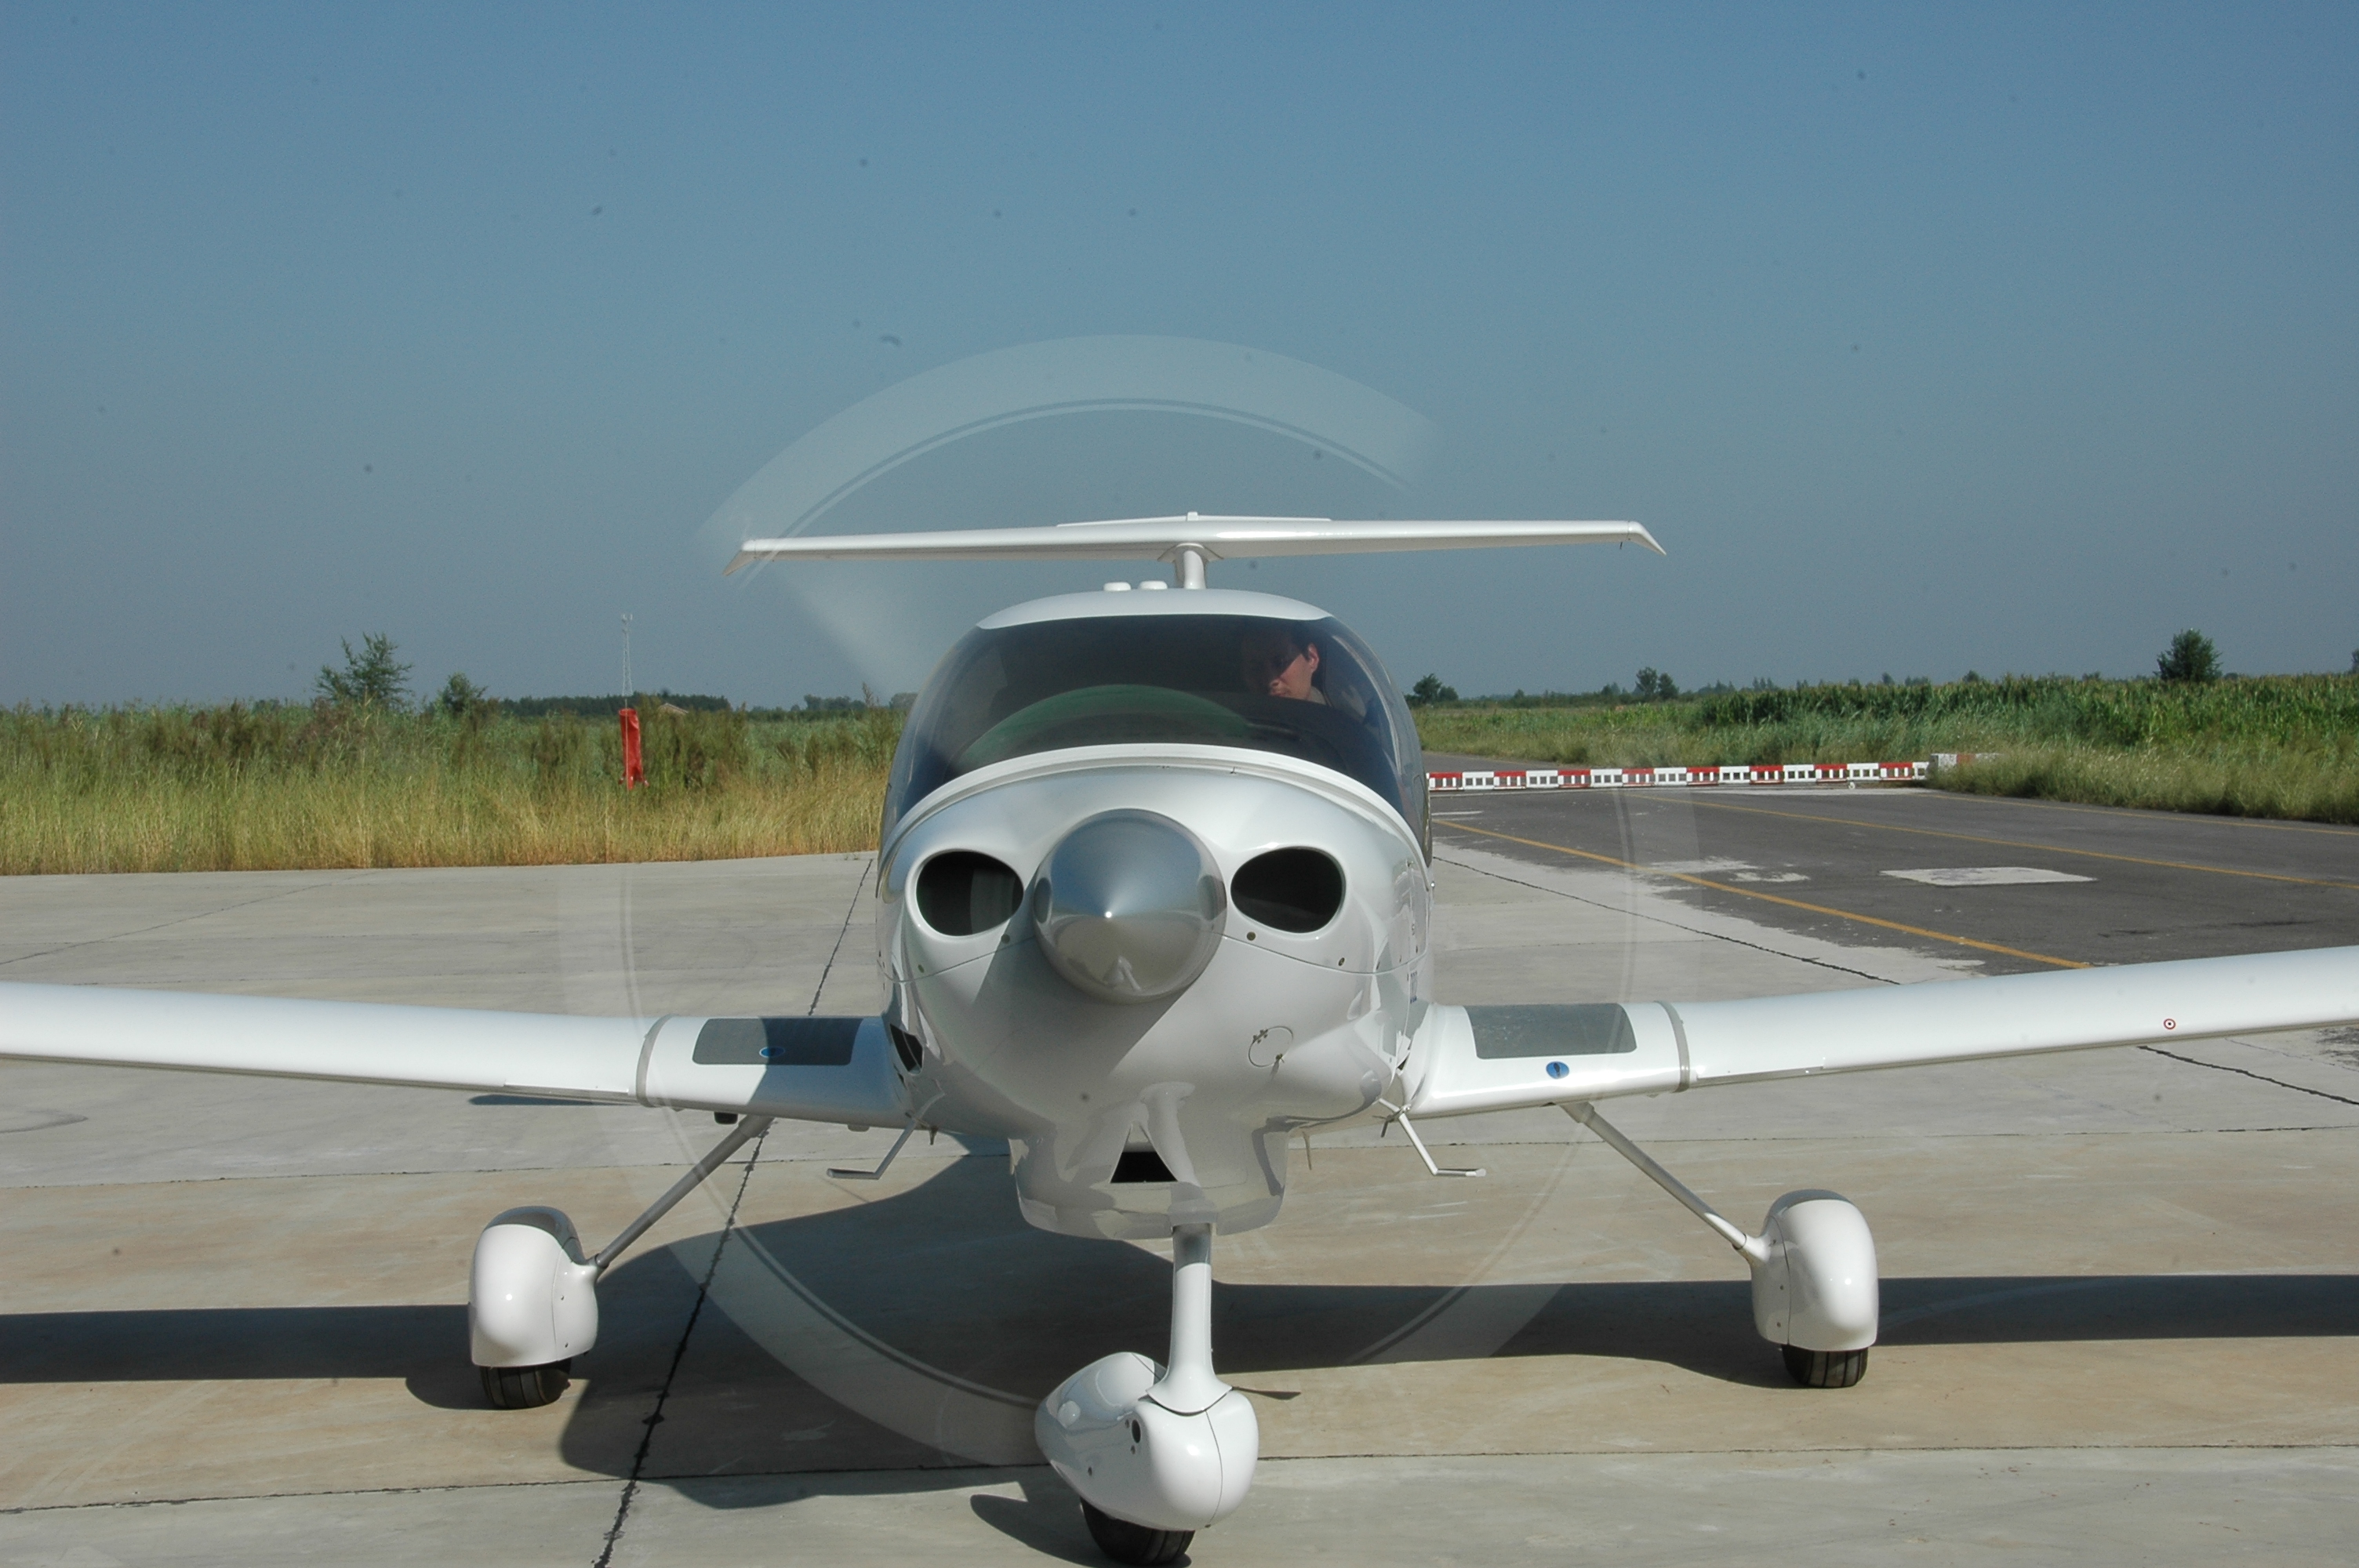 da40飞机以其优雅的气动外形,先进的航电设施和超低的航空煤油消耗